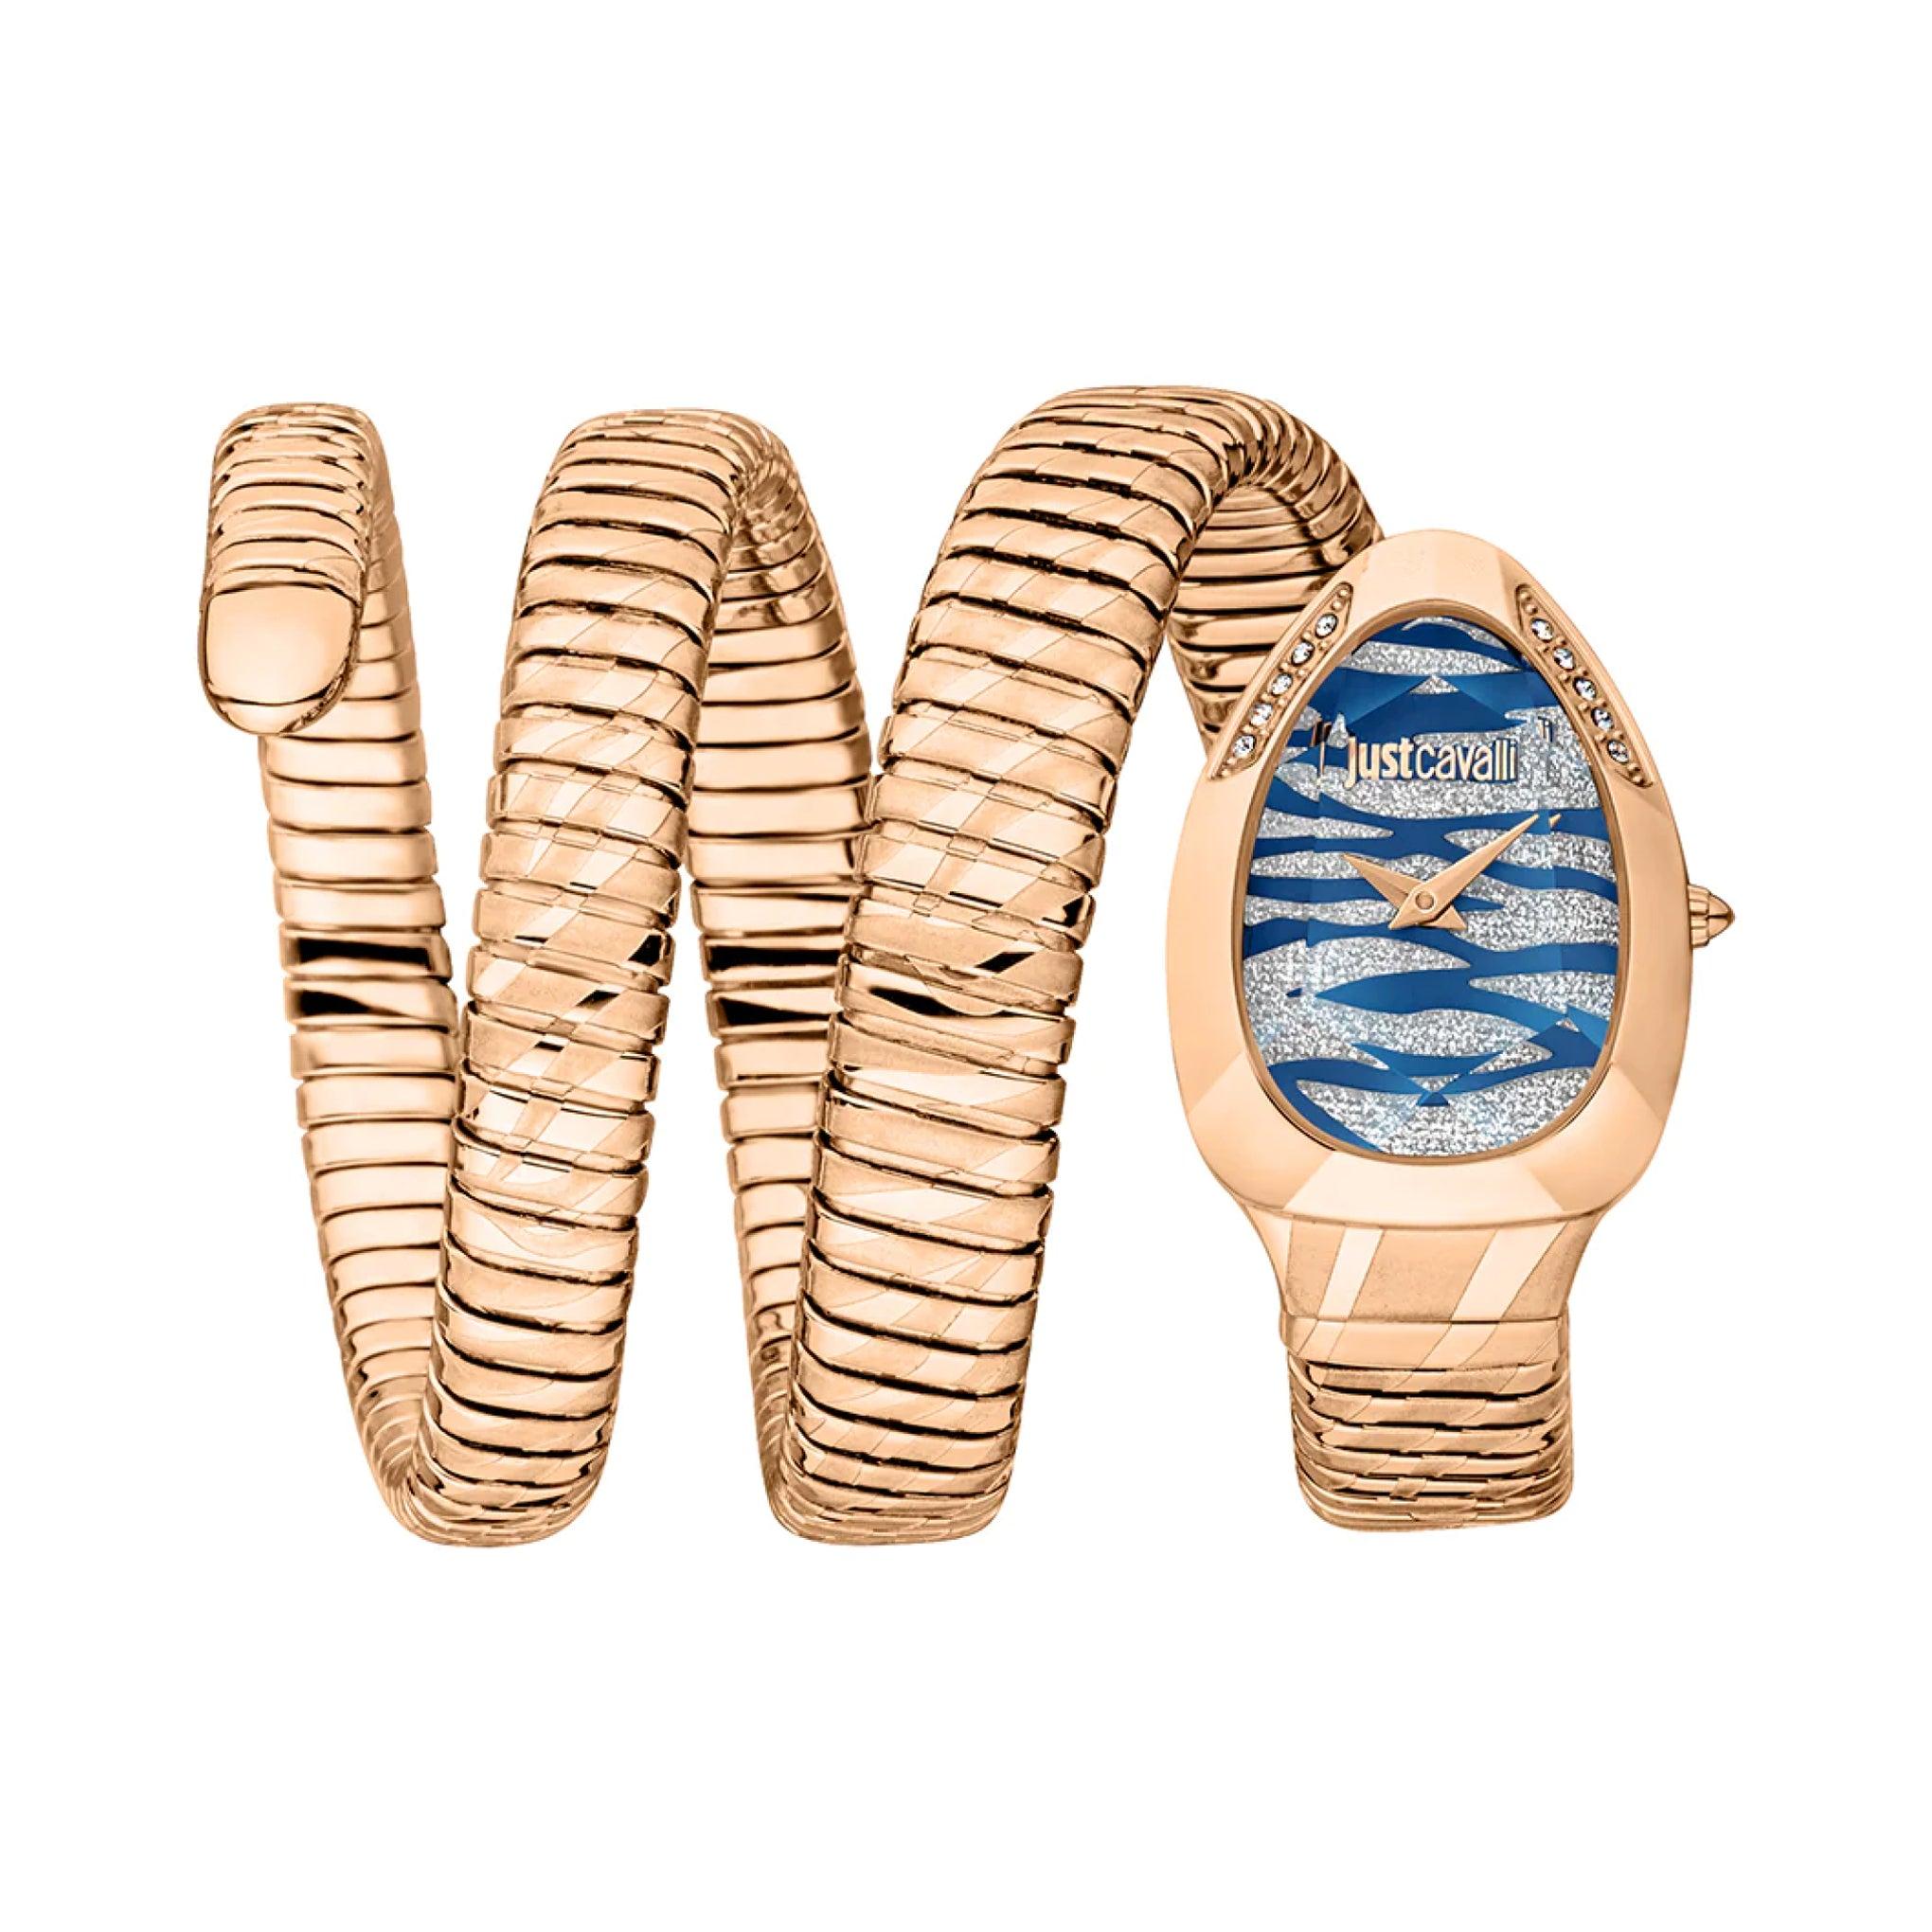 ساعة يد نسائية بشكل ثعبان - ذهبي - بحزام معدني مقاوم للصدأ جست كافاليJust Cavalli Women's Serpente Taglio Analog Watch